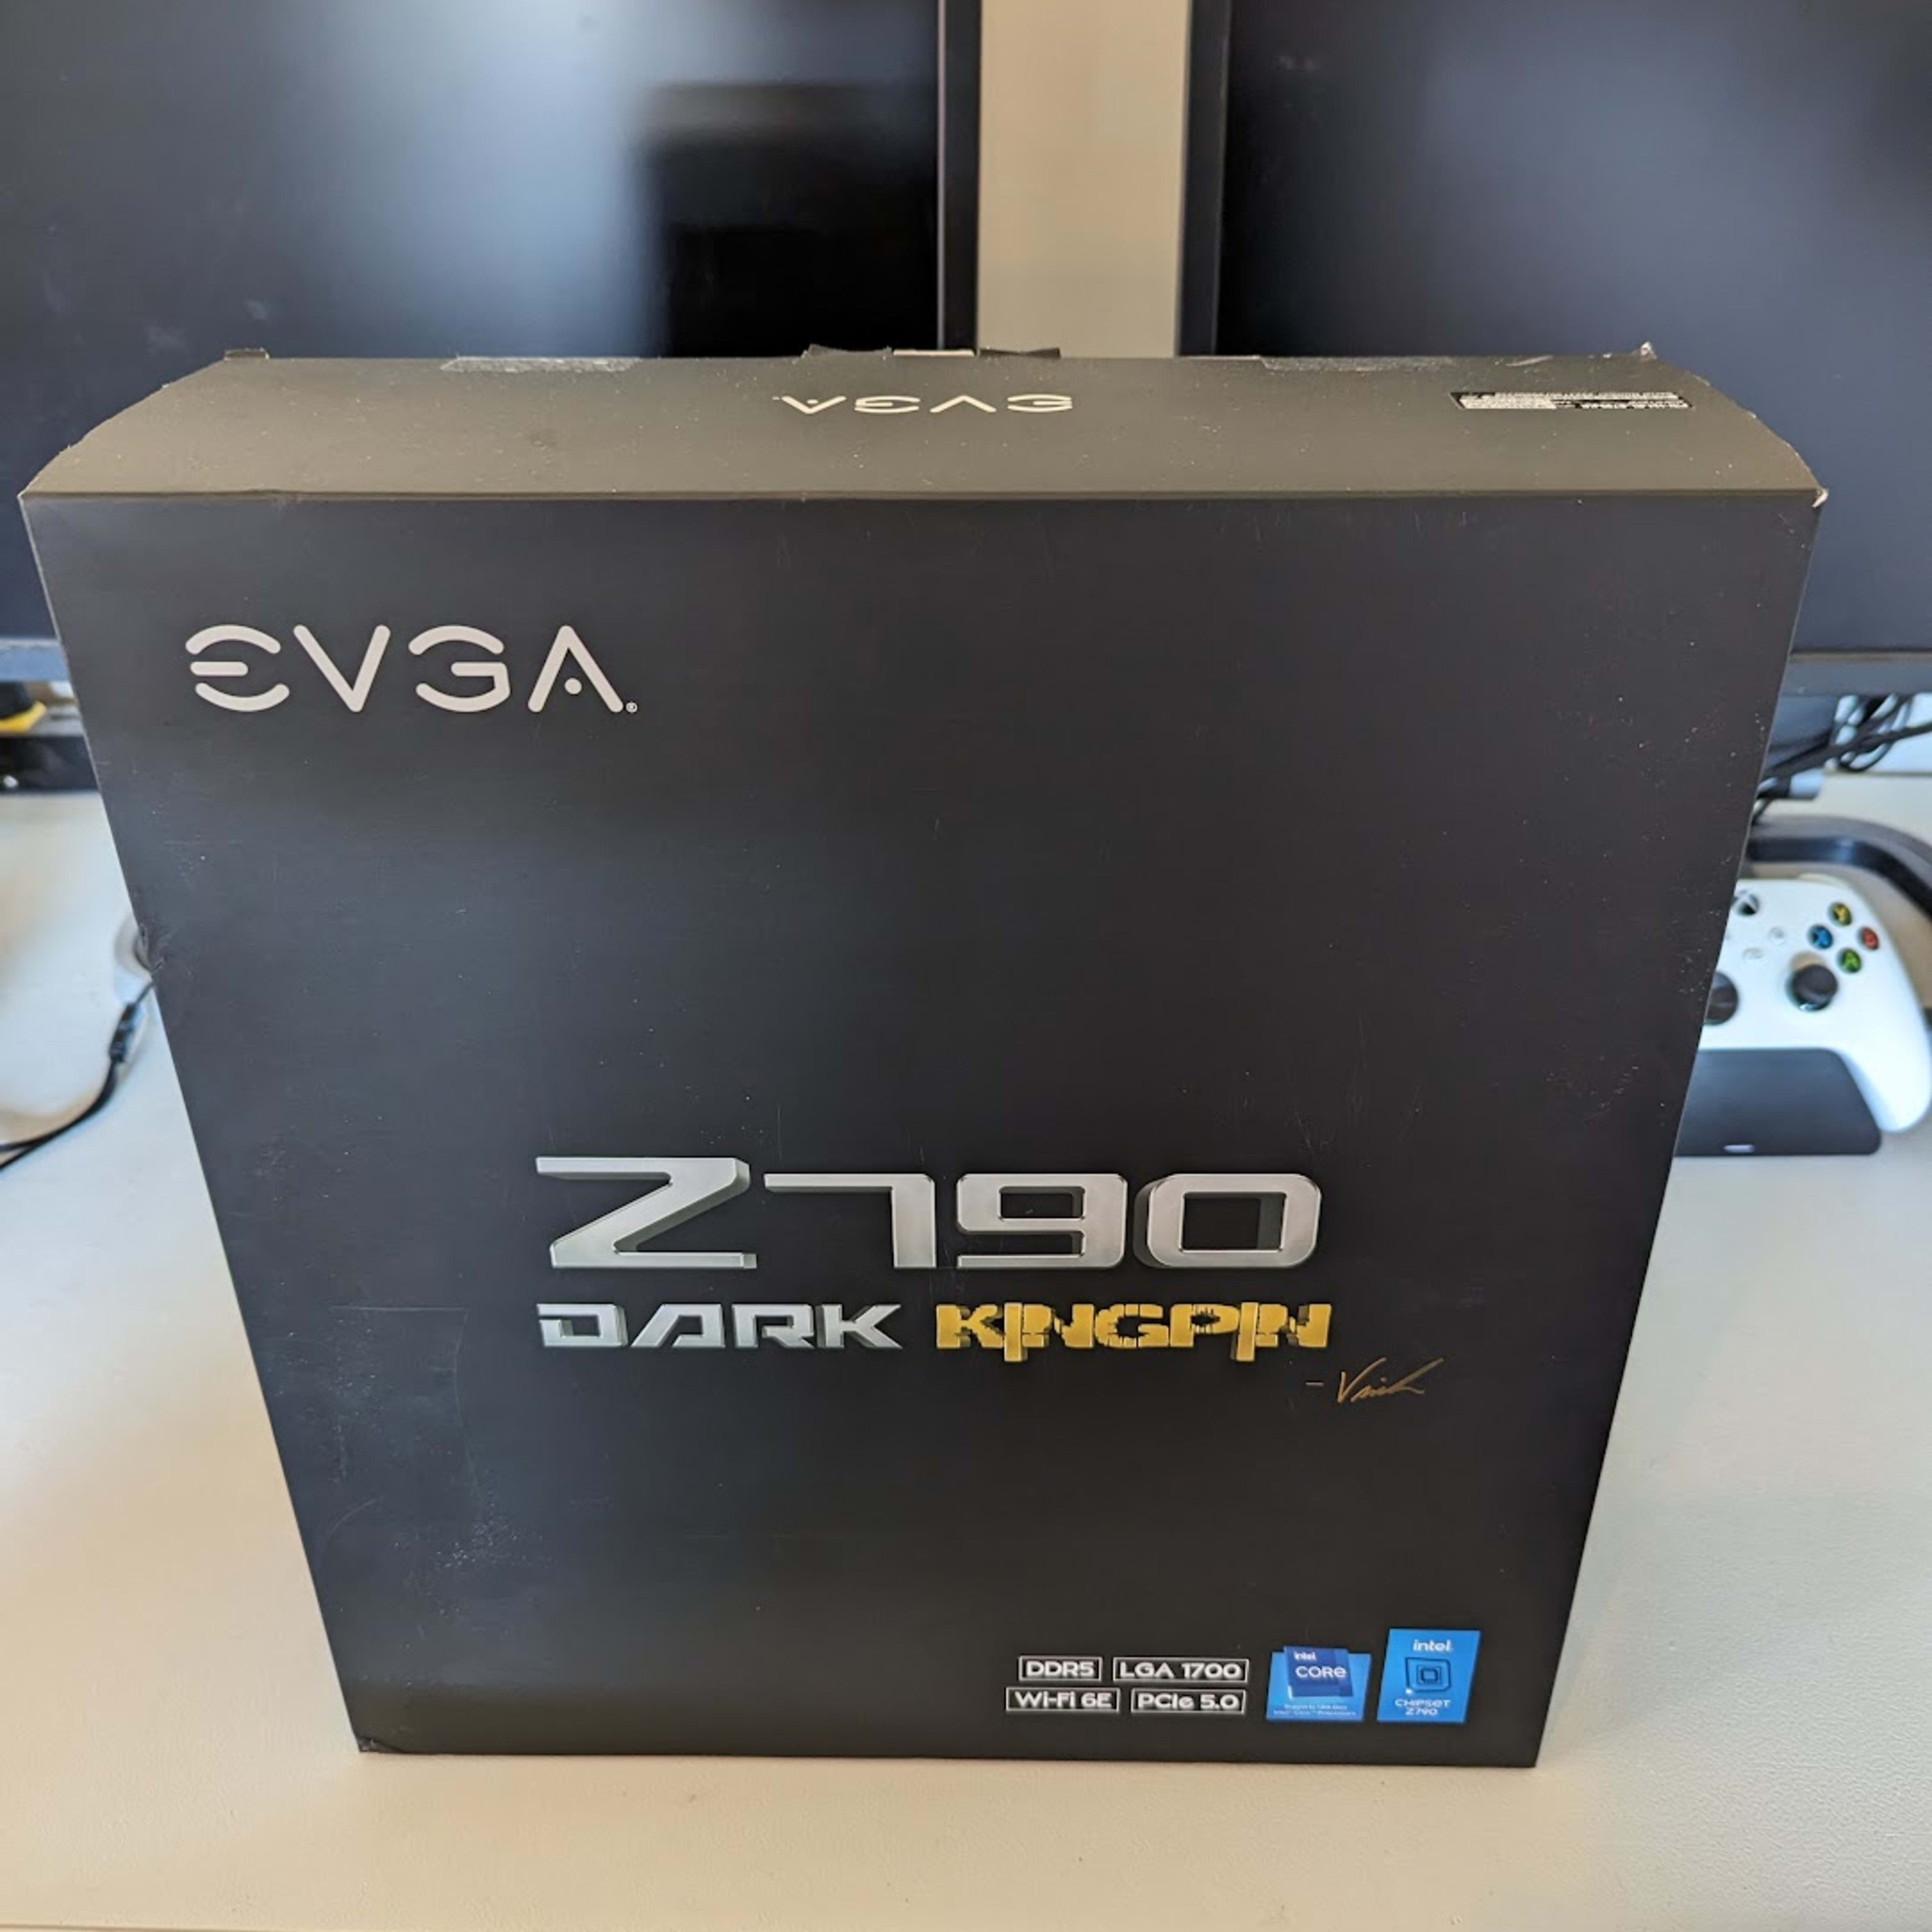 EVGA Z790 DARK K|NGP|N Motherboard - NEW IN BOX